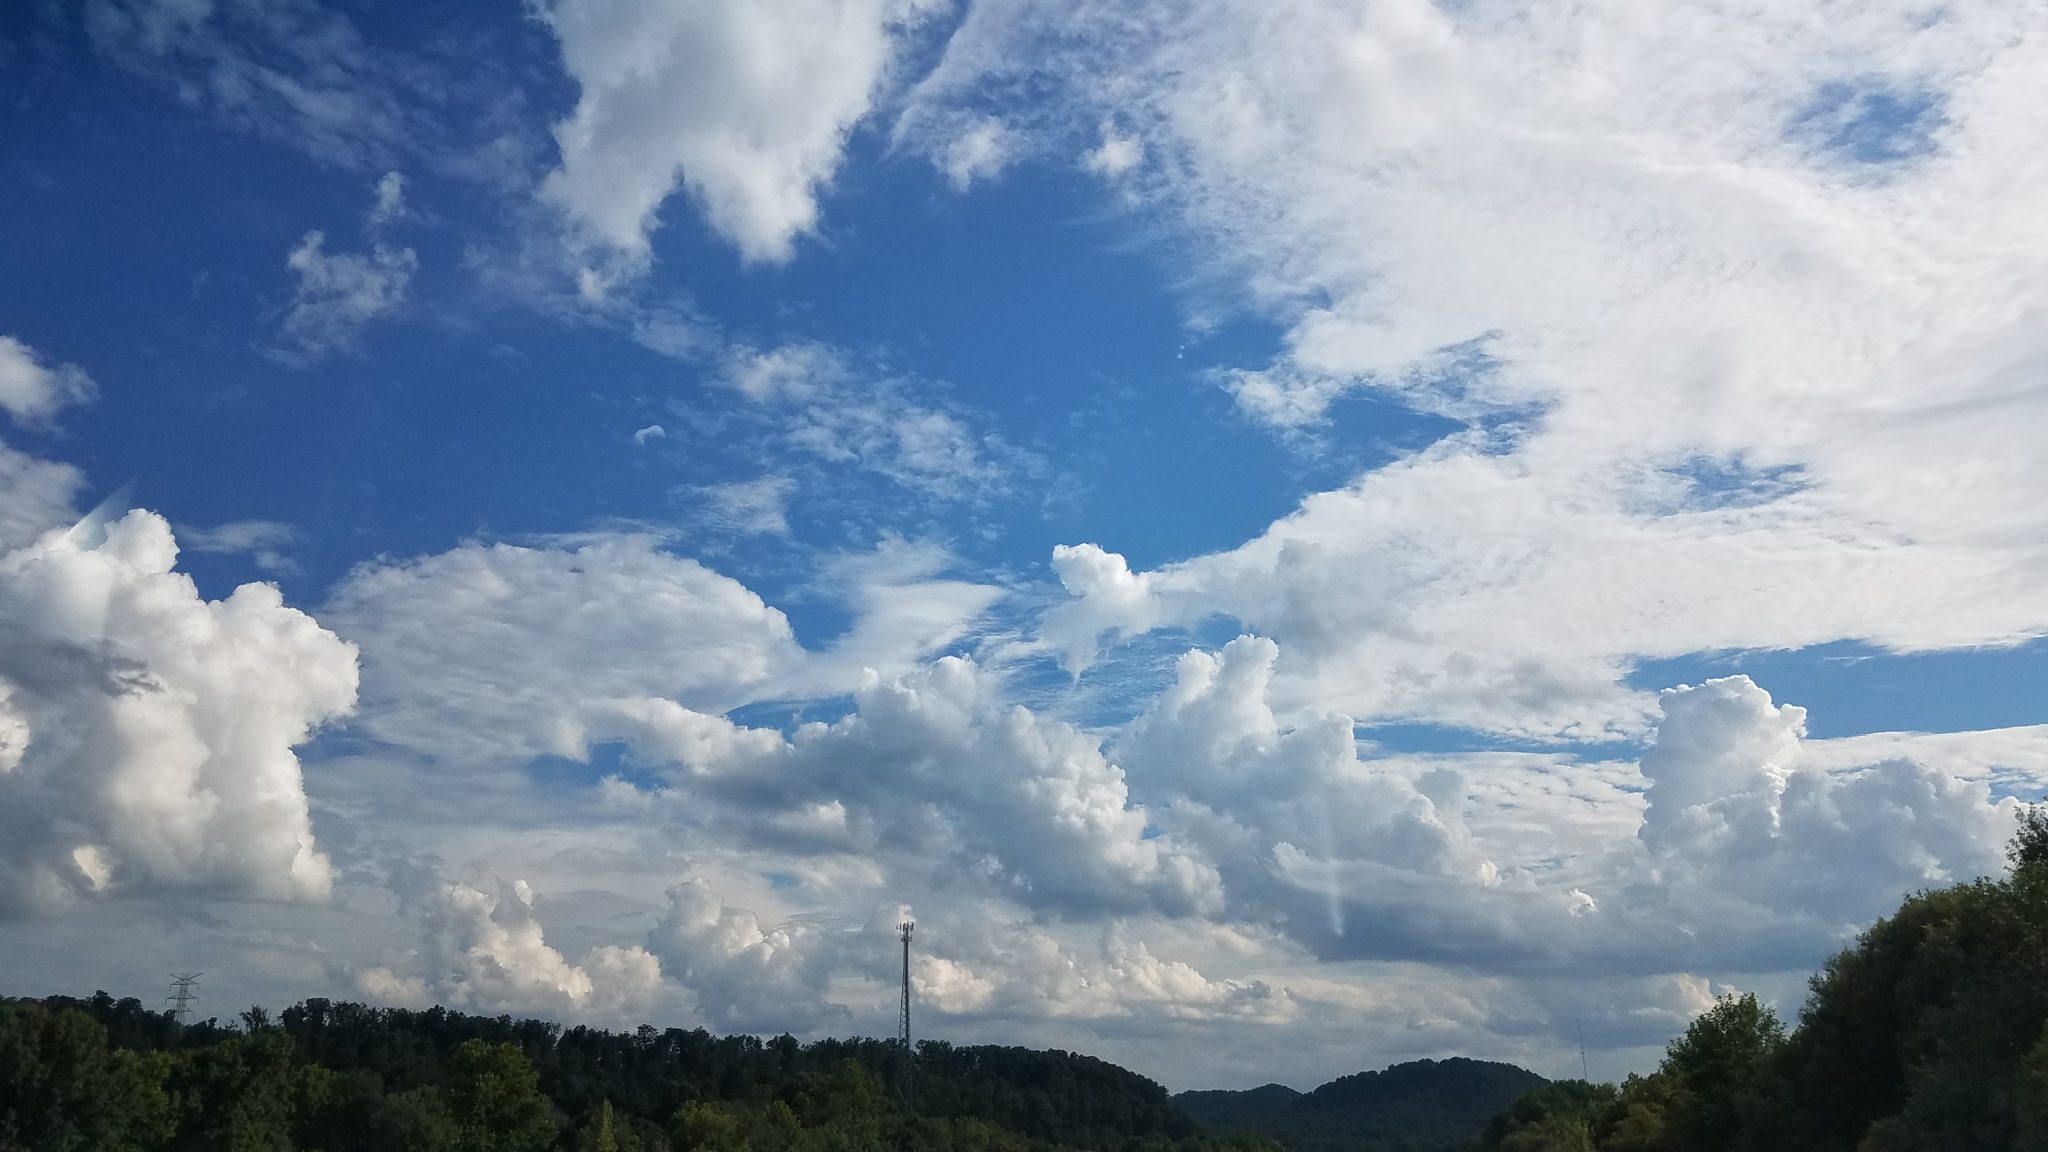 Dynamic cloud formation